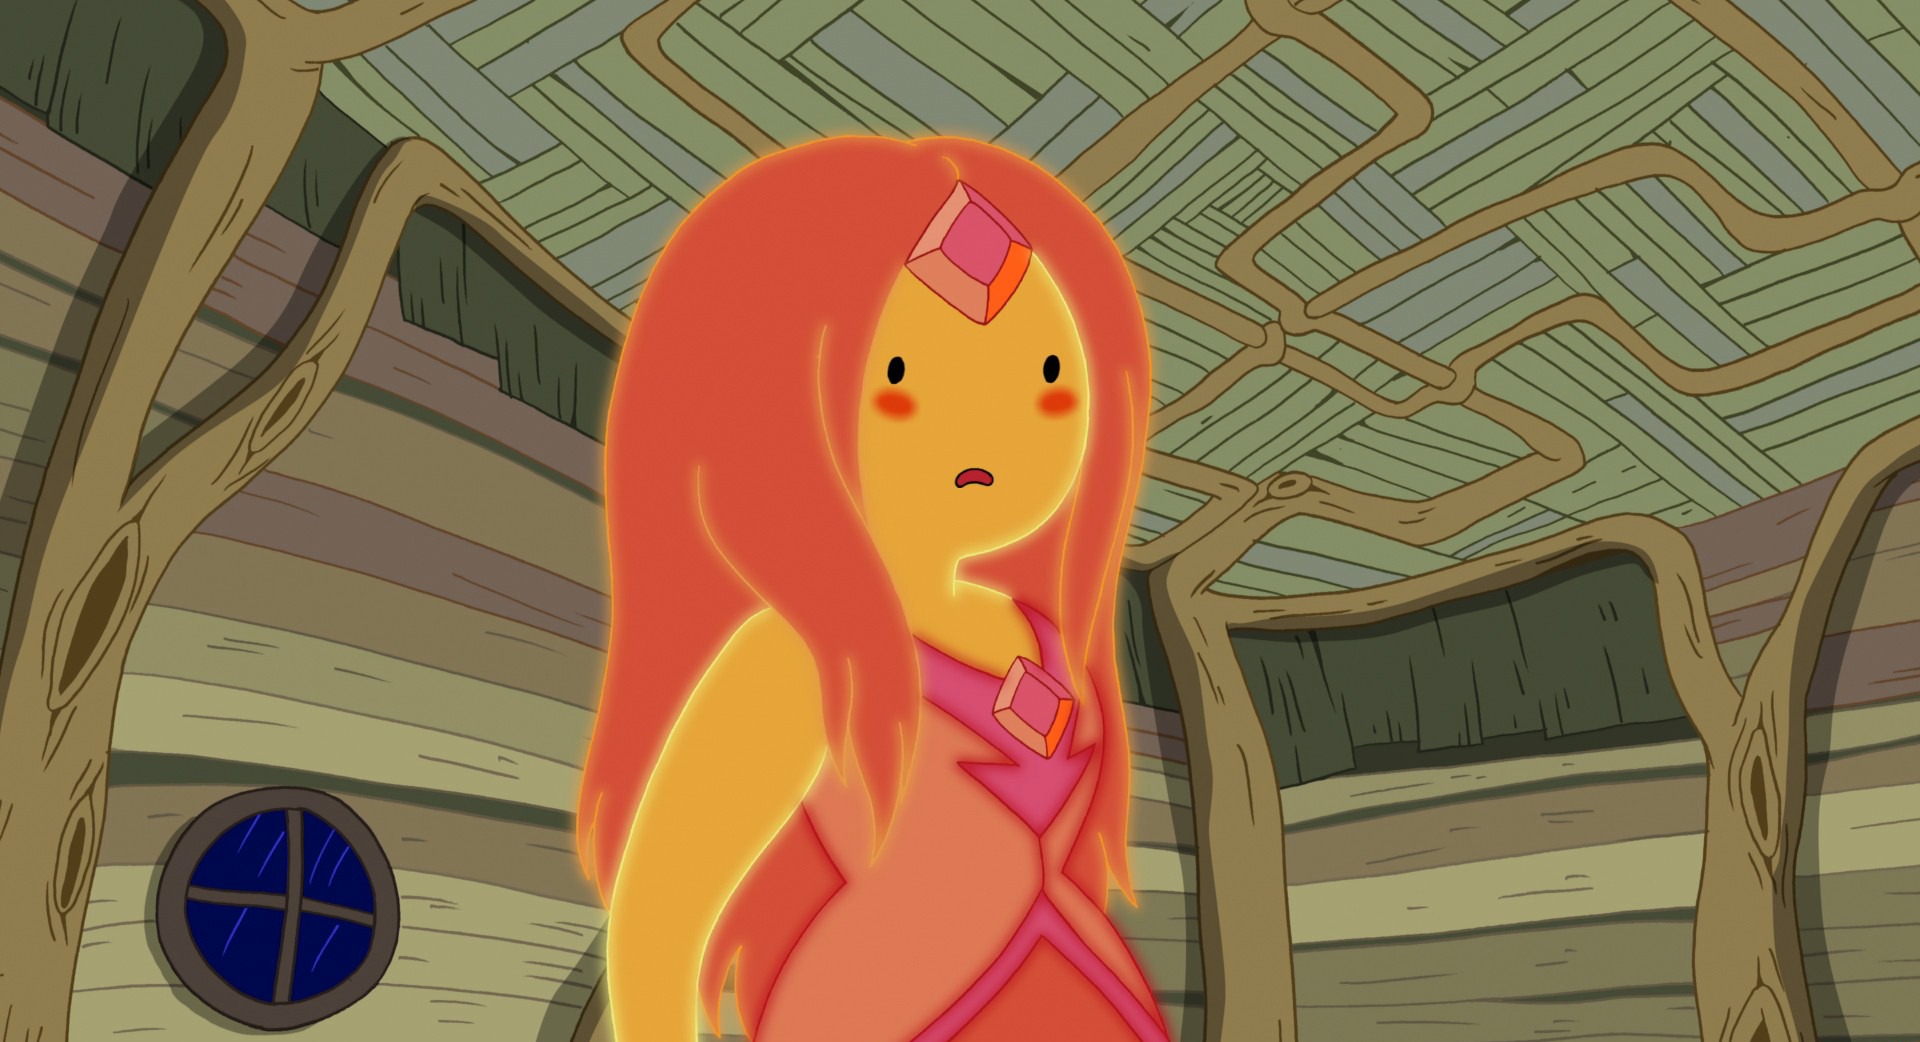 Adventure Time's "Incendium" episode.